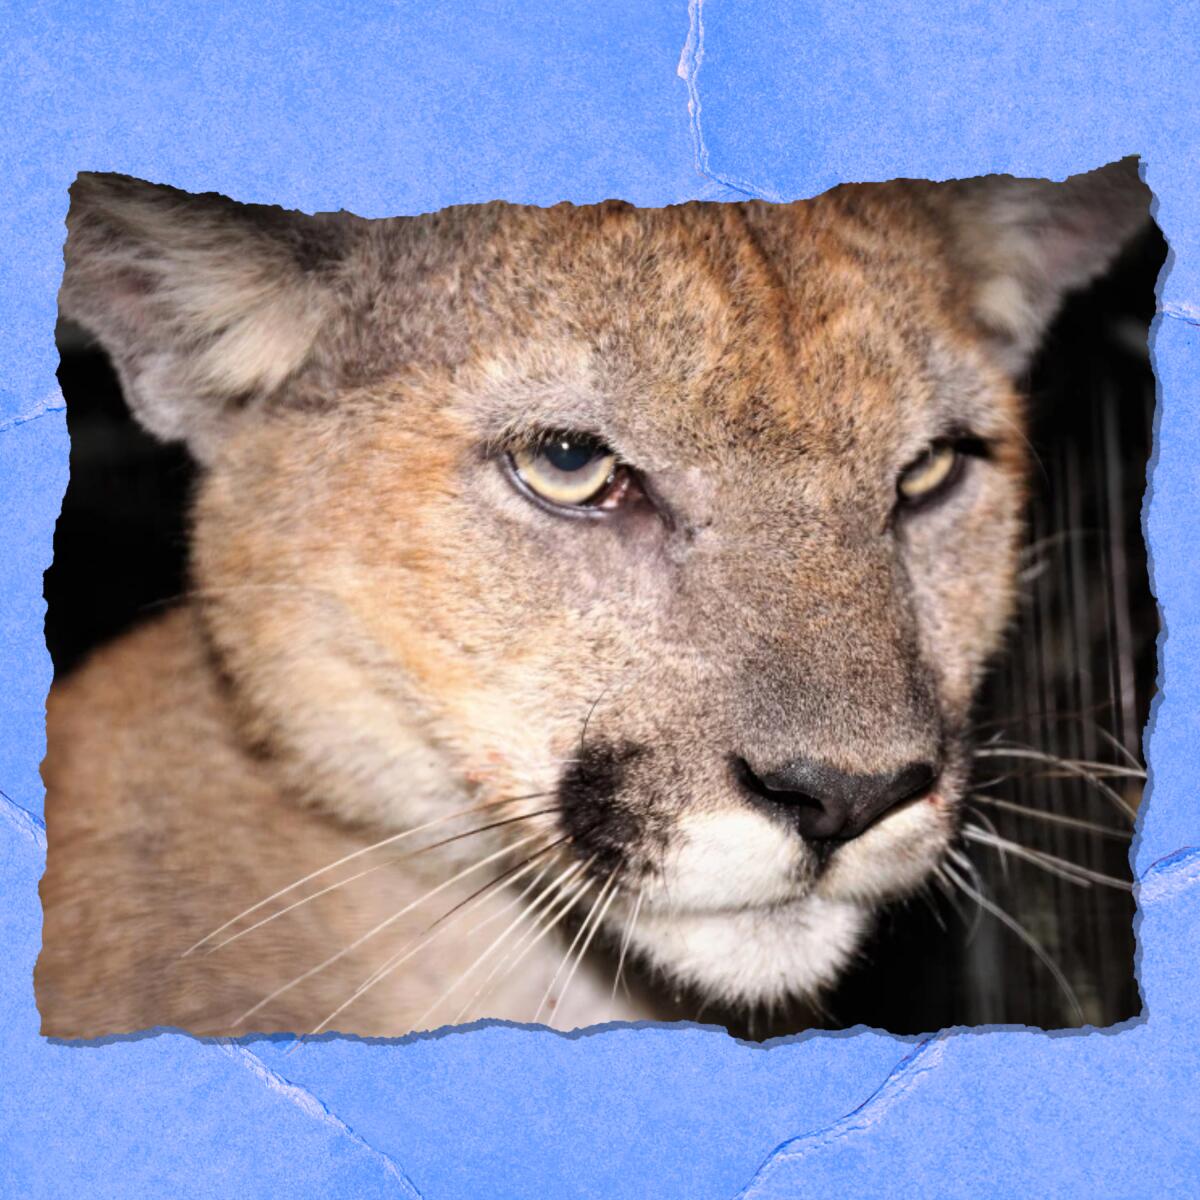 Closeup of a mountain lion's face.